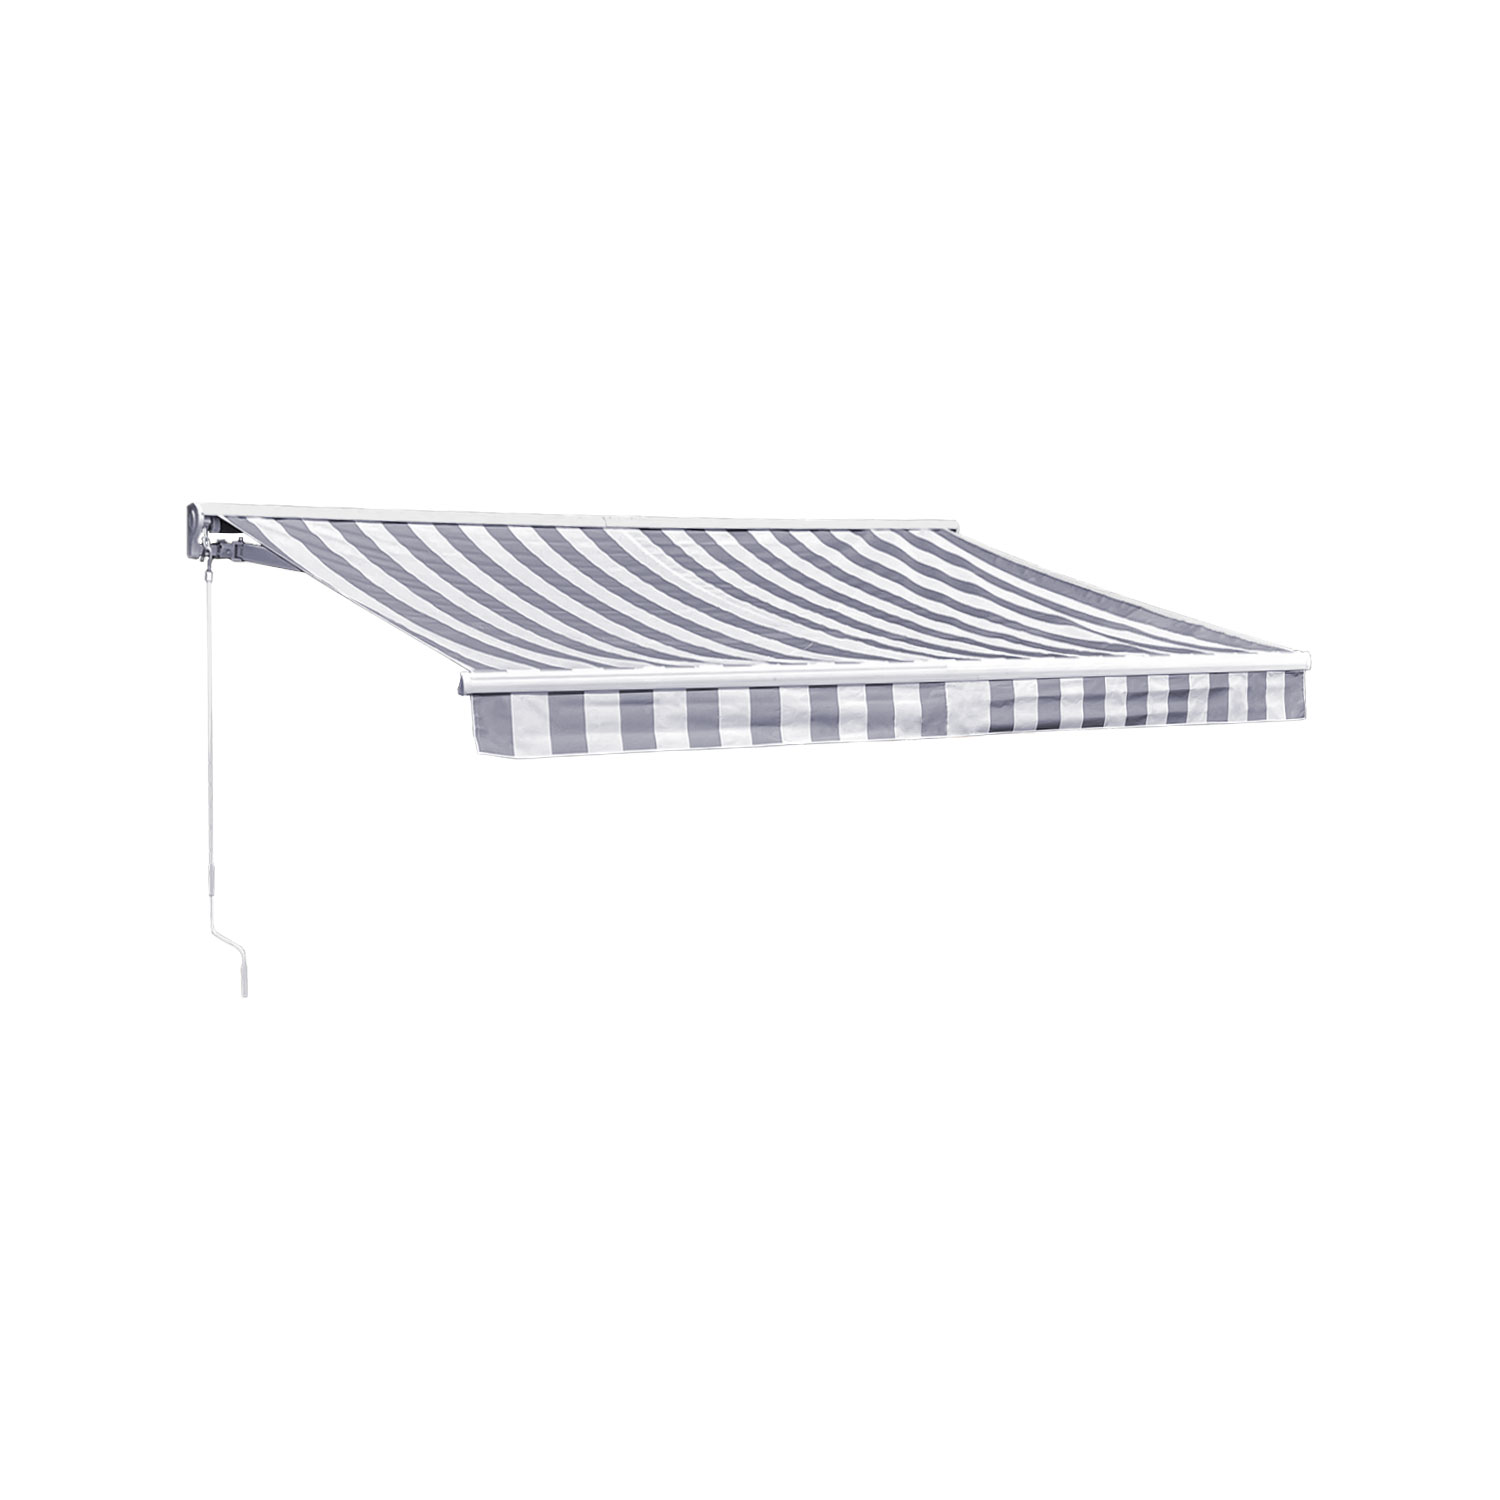 SAULE luifel 2,95 × 2,5m met half luifel - Wit/grijs gestreept doek en witte structuur